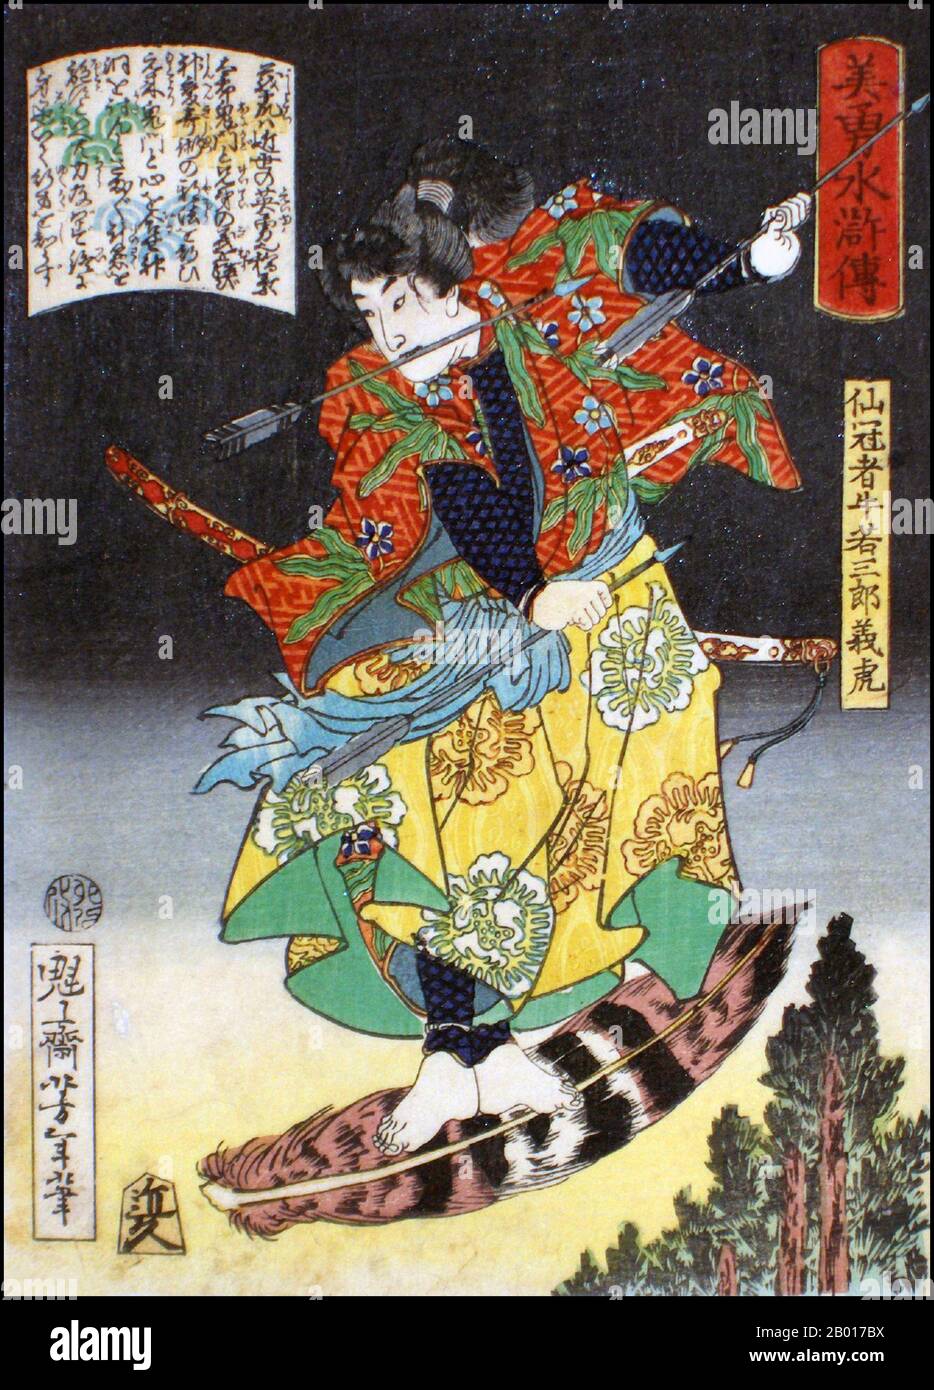 Japon: 'The Warrior Senkanja Ushiwakasaburo Yoshitora'.Imprimé Ukiyo-e de la série 'Heroes of the Water Margin' de Tsukioka Yoshitoshi (1839 - 9 juin 1892), 1867.Tsukioka Yoshitoshi, également appelé Tiso Yoshitoshi, était un artiste japonais.Il est largement reconnu comme le dernier grand maître d'Ukiyo-e, un type d'impression de blocs de bois japonais.Il est également considéré comme l'un des plus grands innovateurs de la forme.Sa carrière s'est étendue à deux époques : les dernières années du Japon féodal et les premières années du Japon moderne après la restauration de Meiji. Banque D'Images